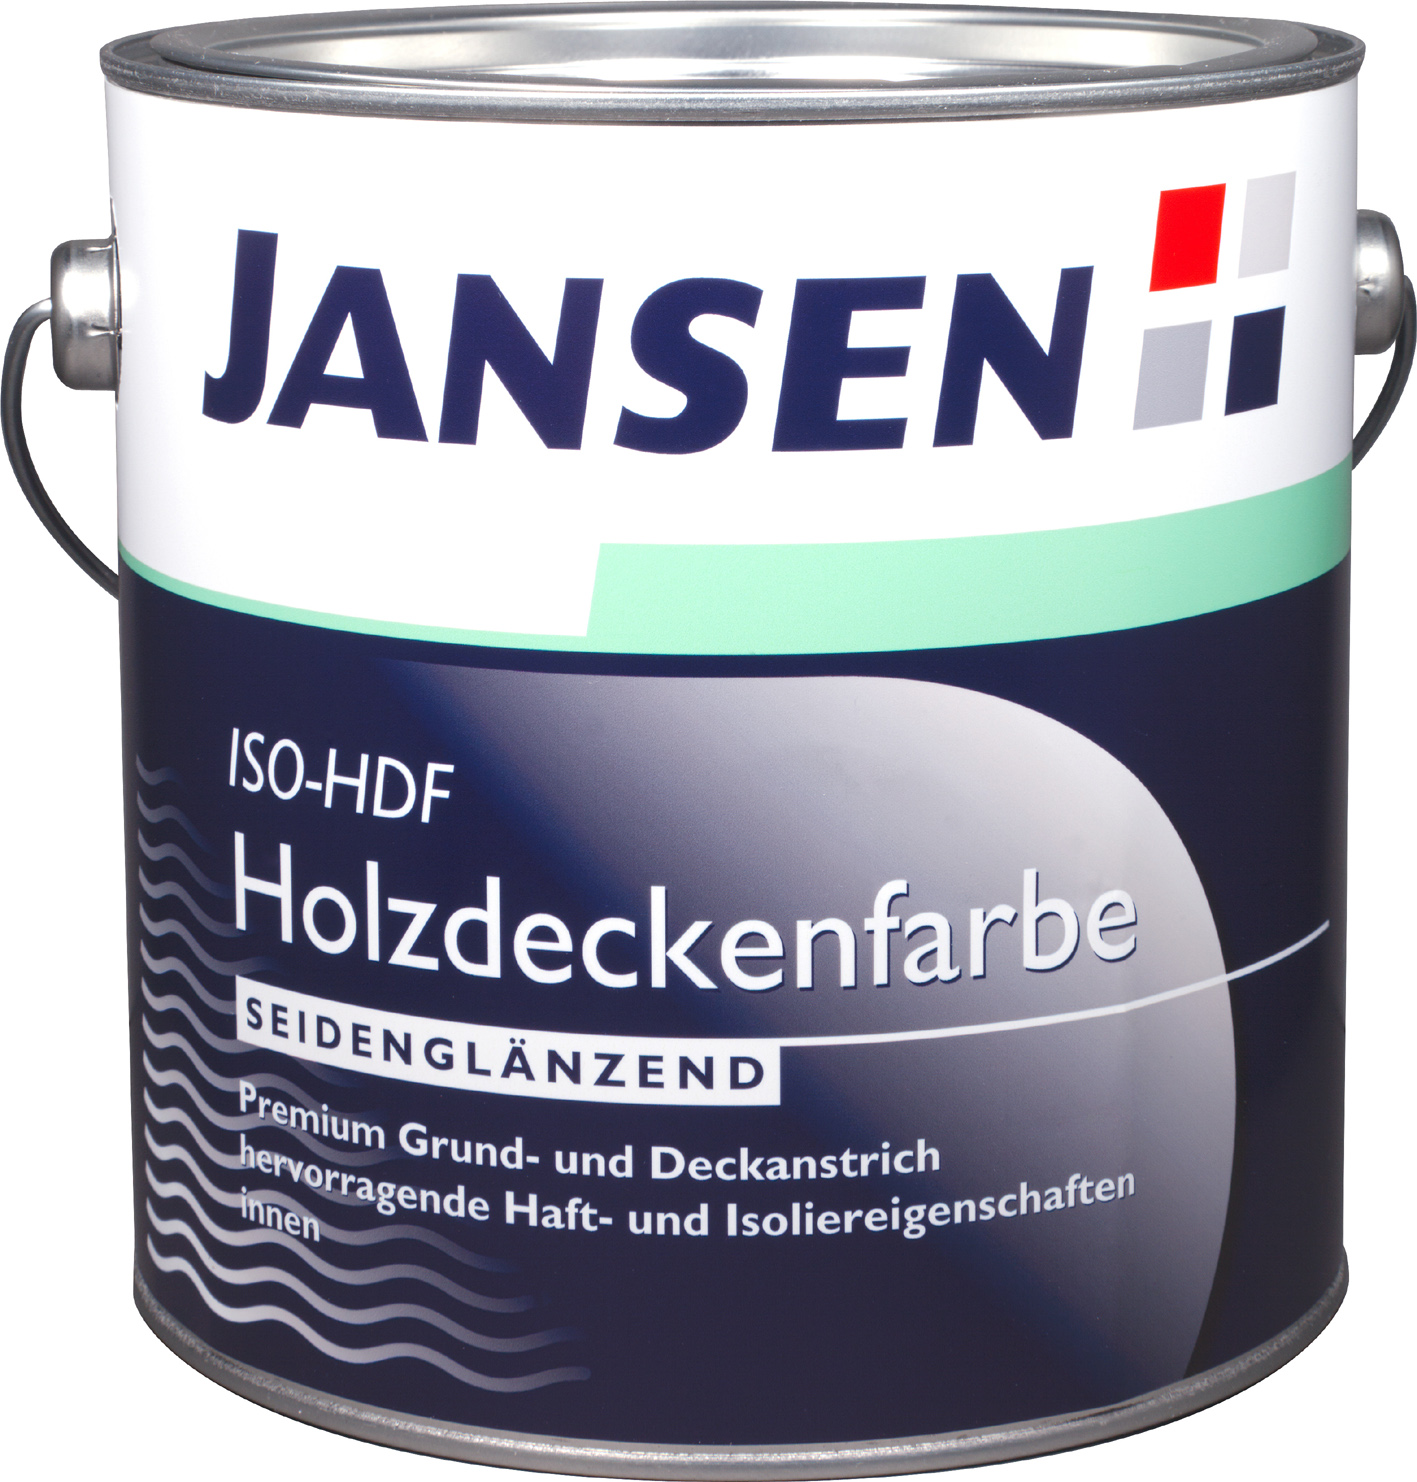 Jansen ISO-HDF Holzdeckenfarbe - Seidenglänzend Weiß - 2,5 Liter